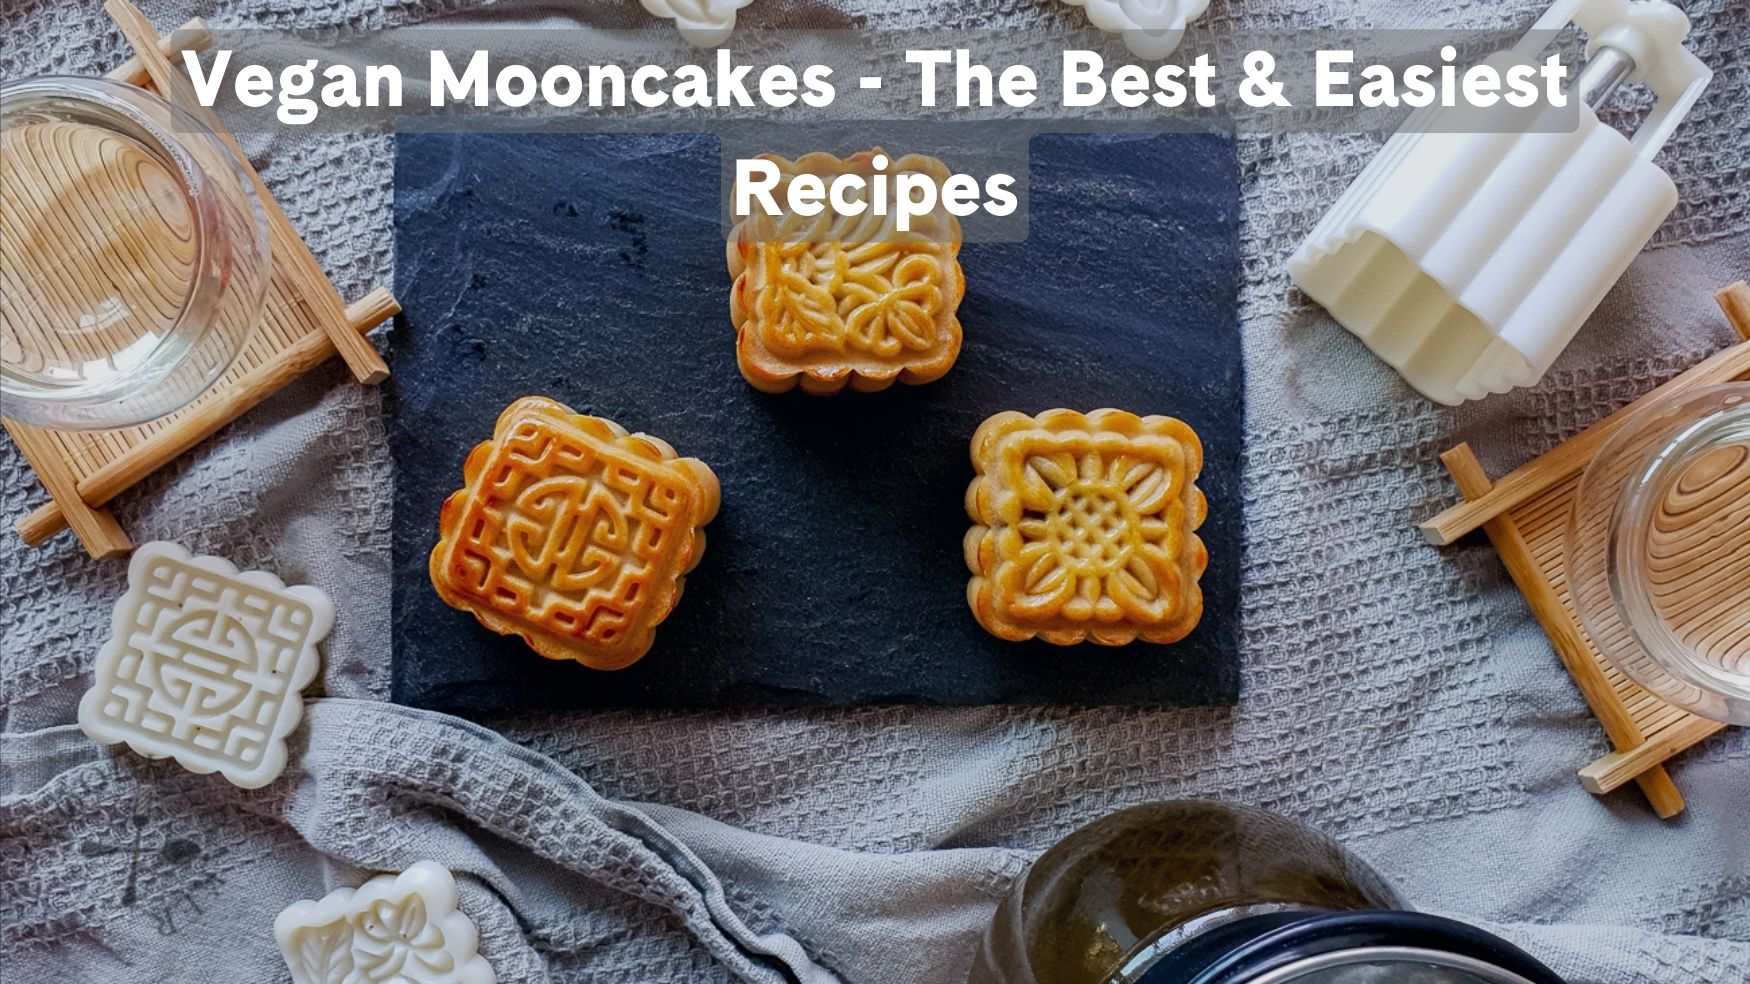 Vegan Mooncakes - The Best & Easiest Recipes